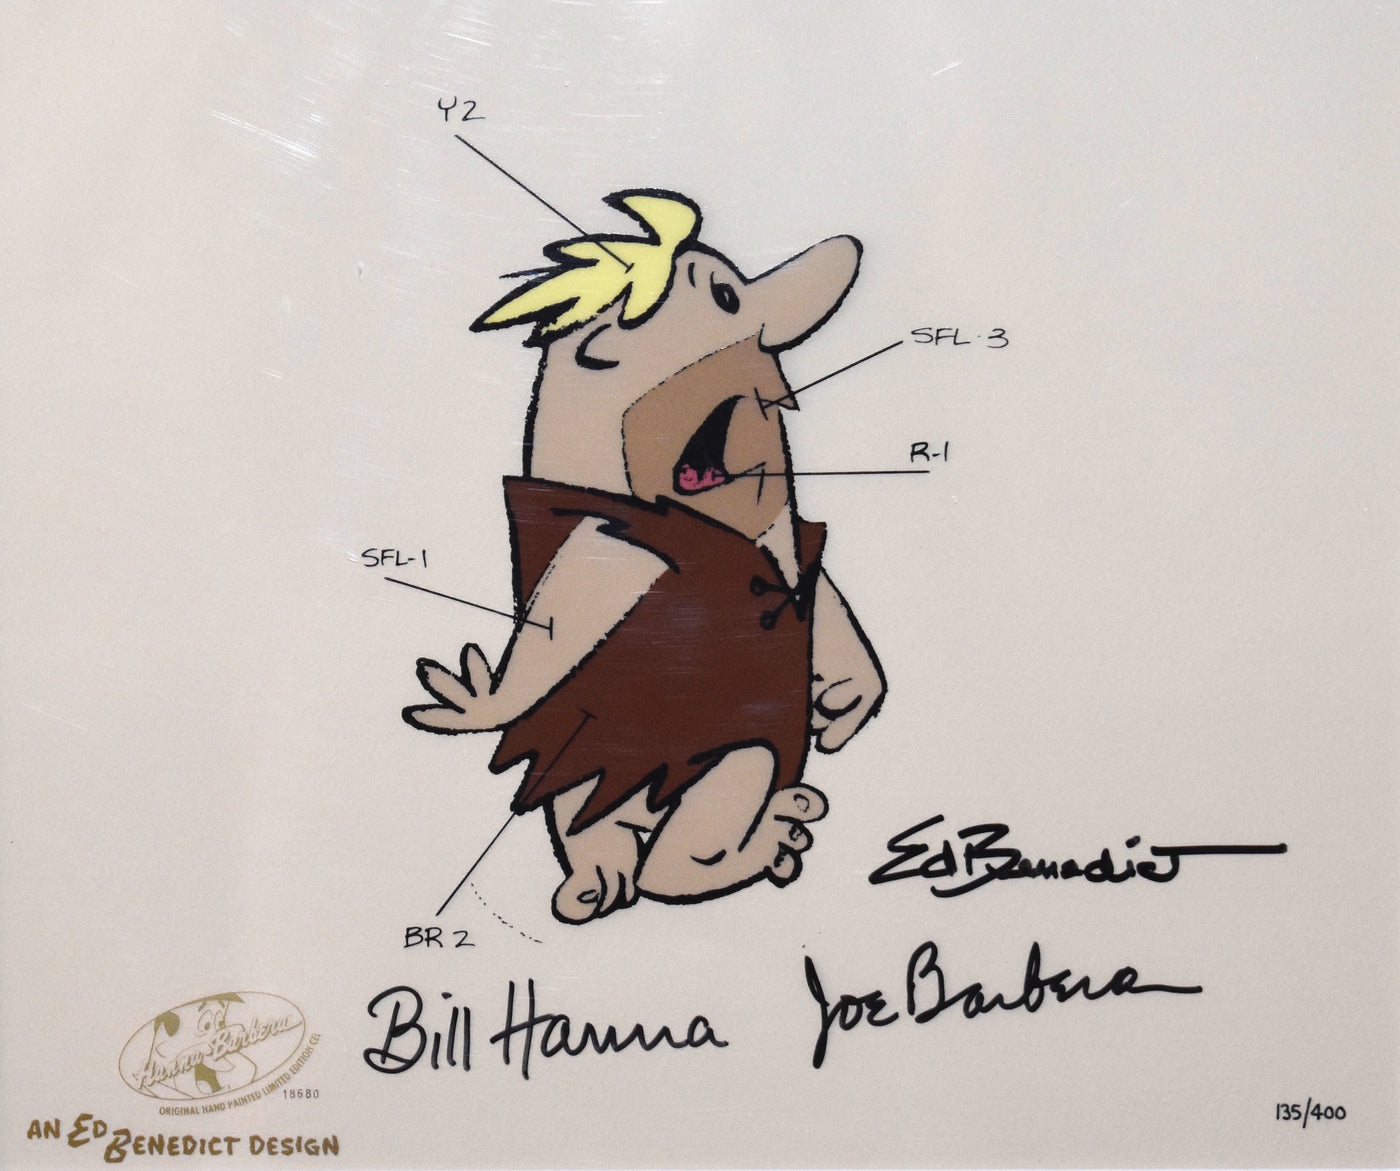 Set of 4 Original Hanna Barbera Limited Edition Cels, Ed's Model Sheet